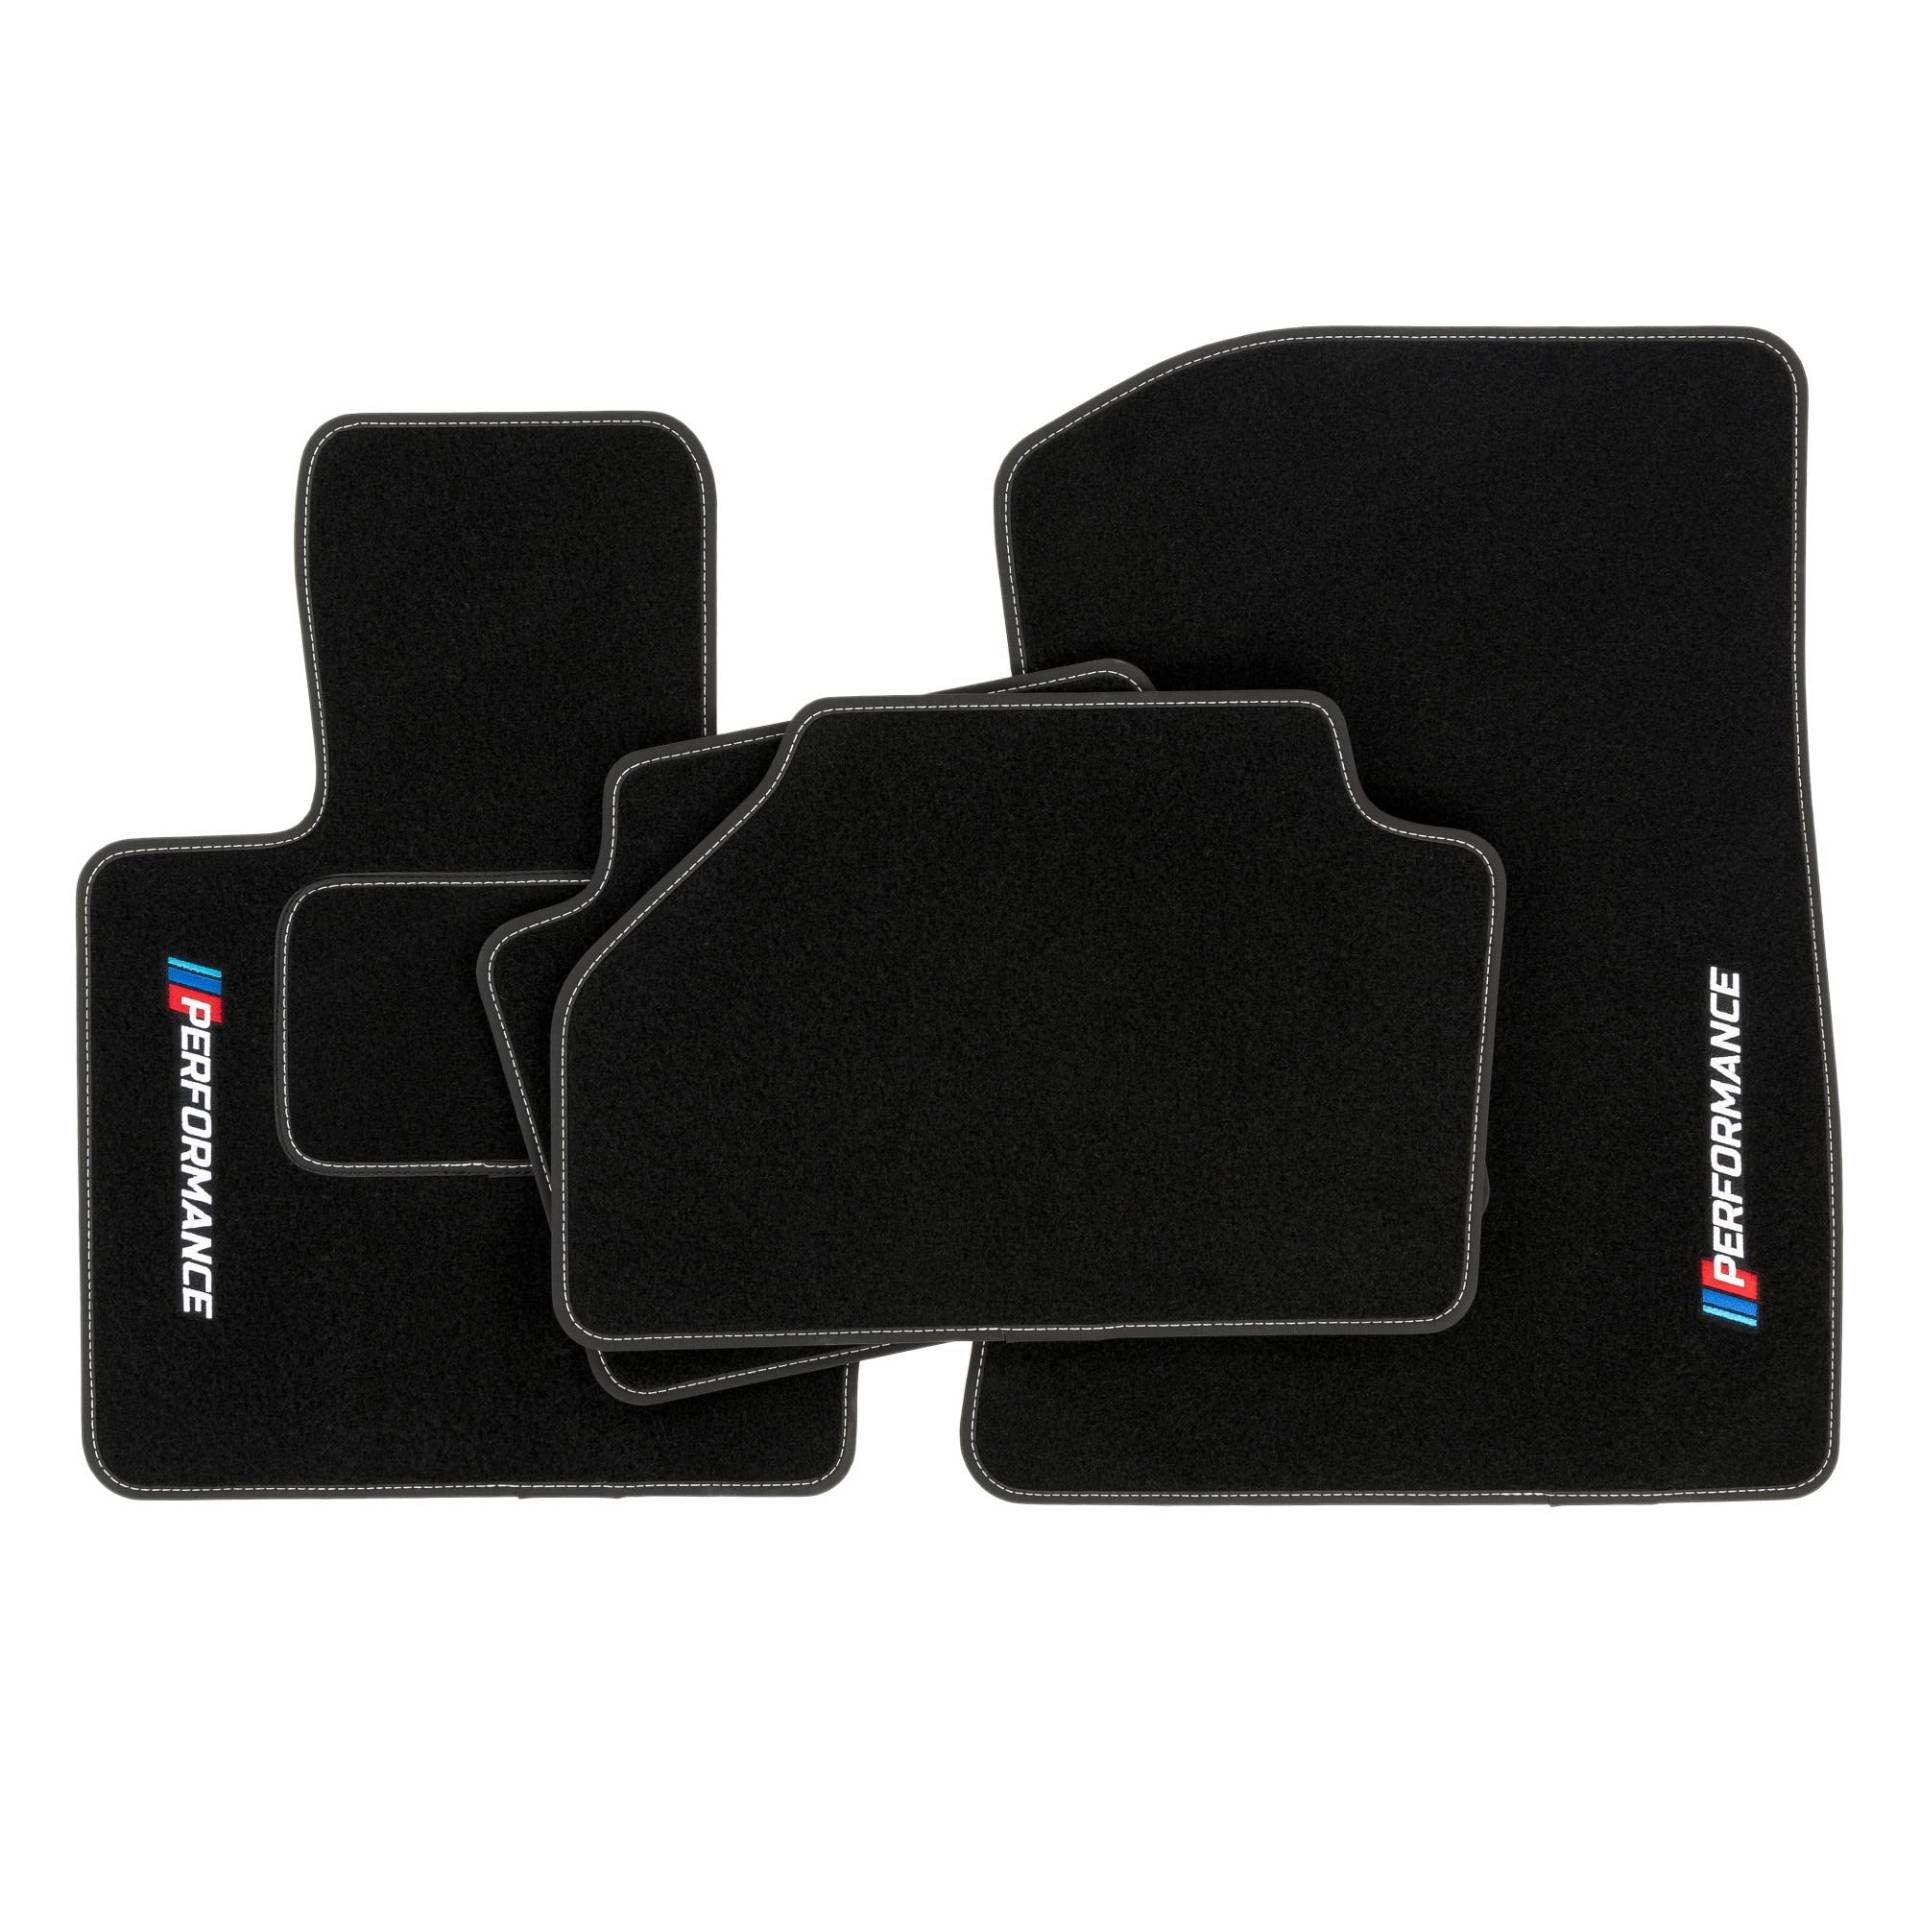 PERFORMANCE Personalisierte Velours-Fußmatten für BMW X4 F26 2011-2017 - Personalisierte, Matt, Weiß - halten Sie Ihr Auto sauber und komfortabel mit unseren Fußmatten von PERFORMANCE